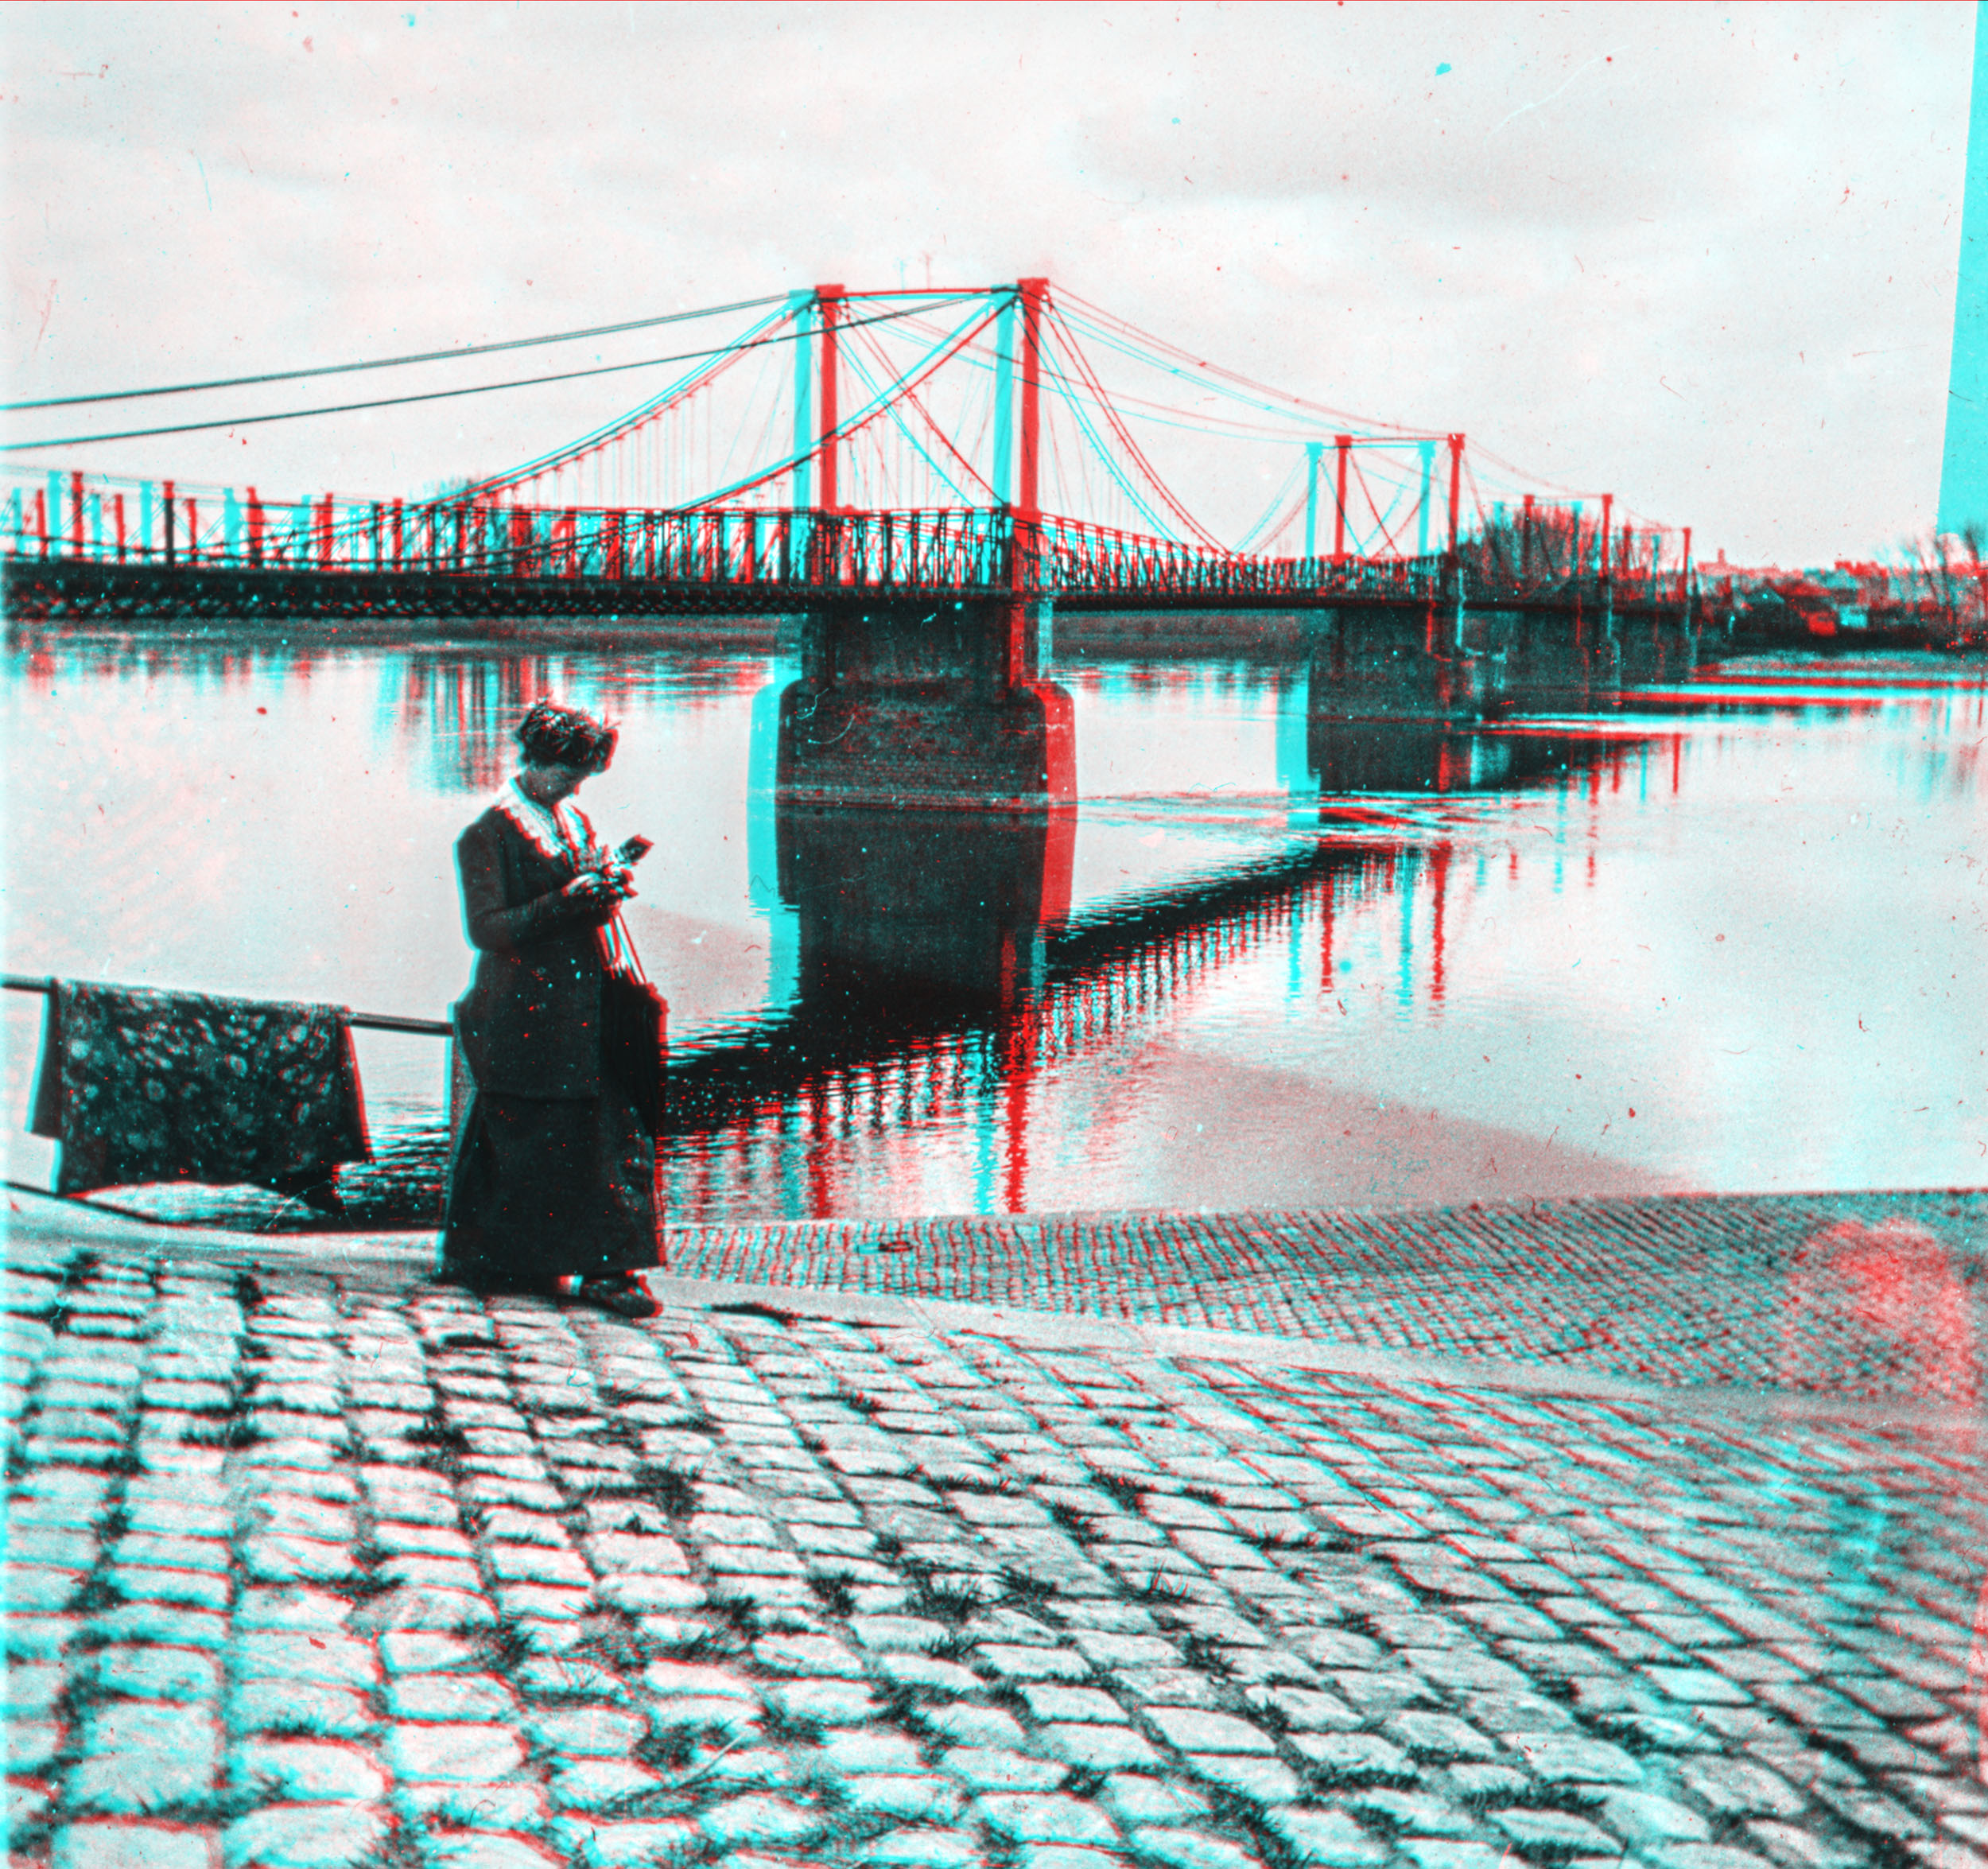 pont suspendu Liré 'a' Ancenis 1915 - Liré to Ancenis suspension bridge, 1915